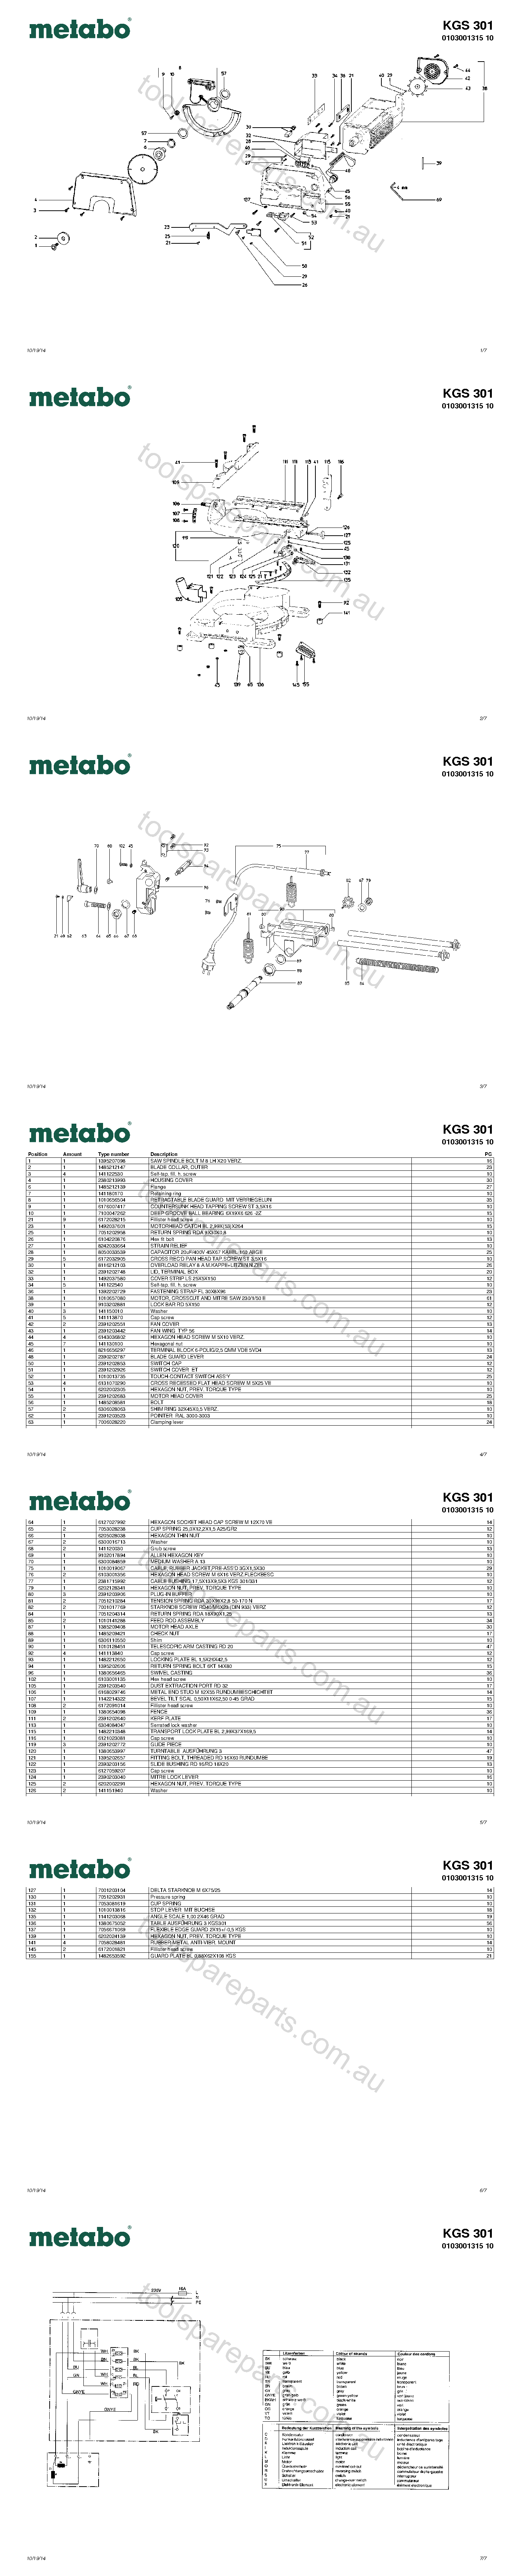 Metabo KGS 301 0103001315 10  Diagram 1